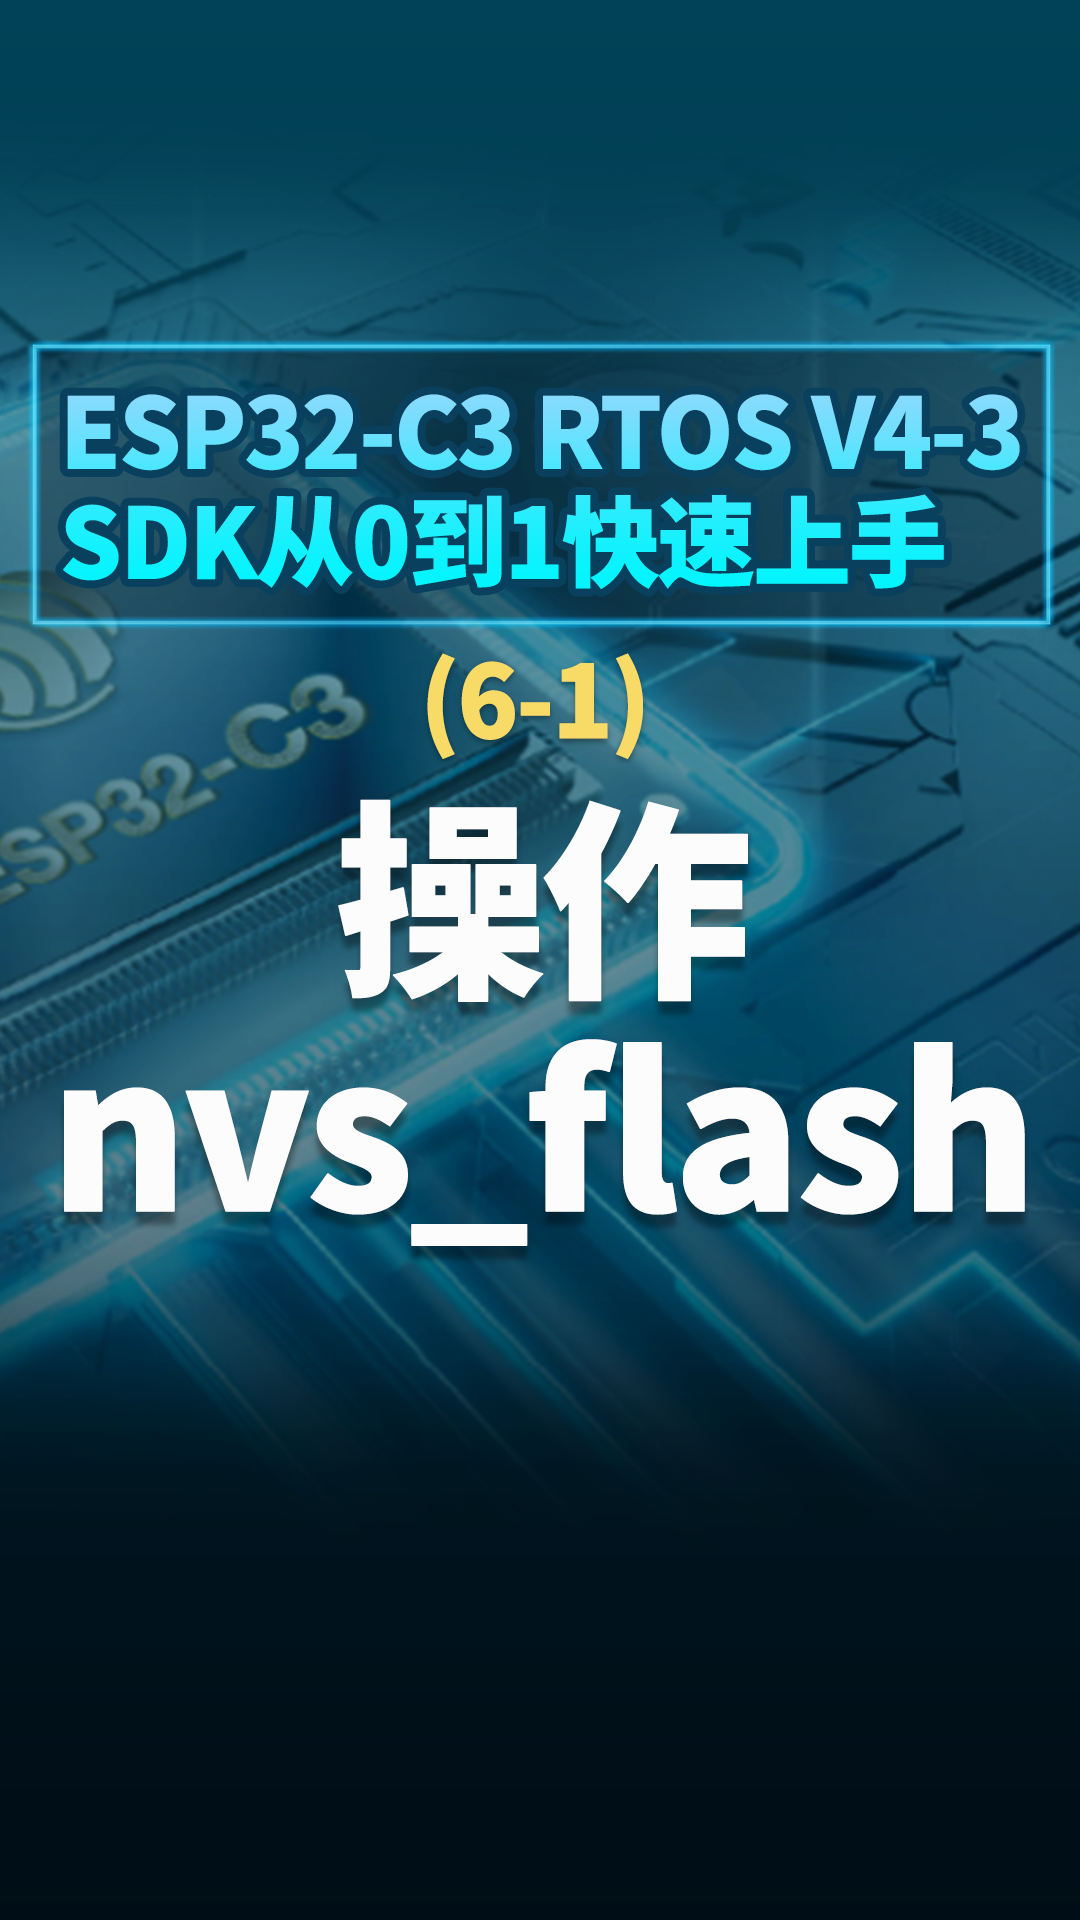 ESP32-C3 RTOS V4-3 SDK从0到1快速上手 - 6-1操作nvs_flash#嵌入式开发 